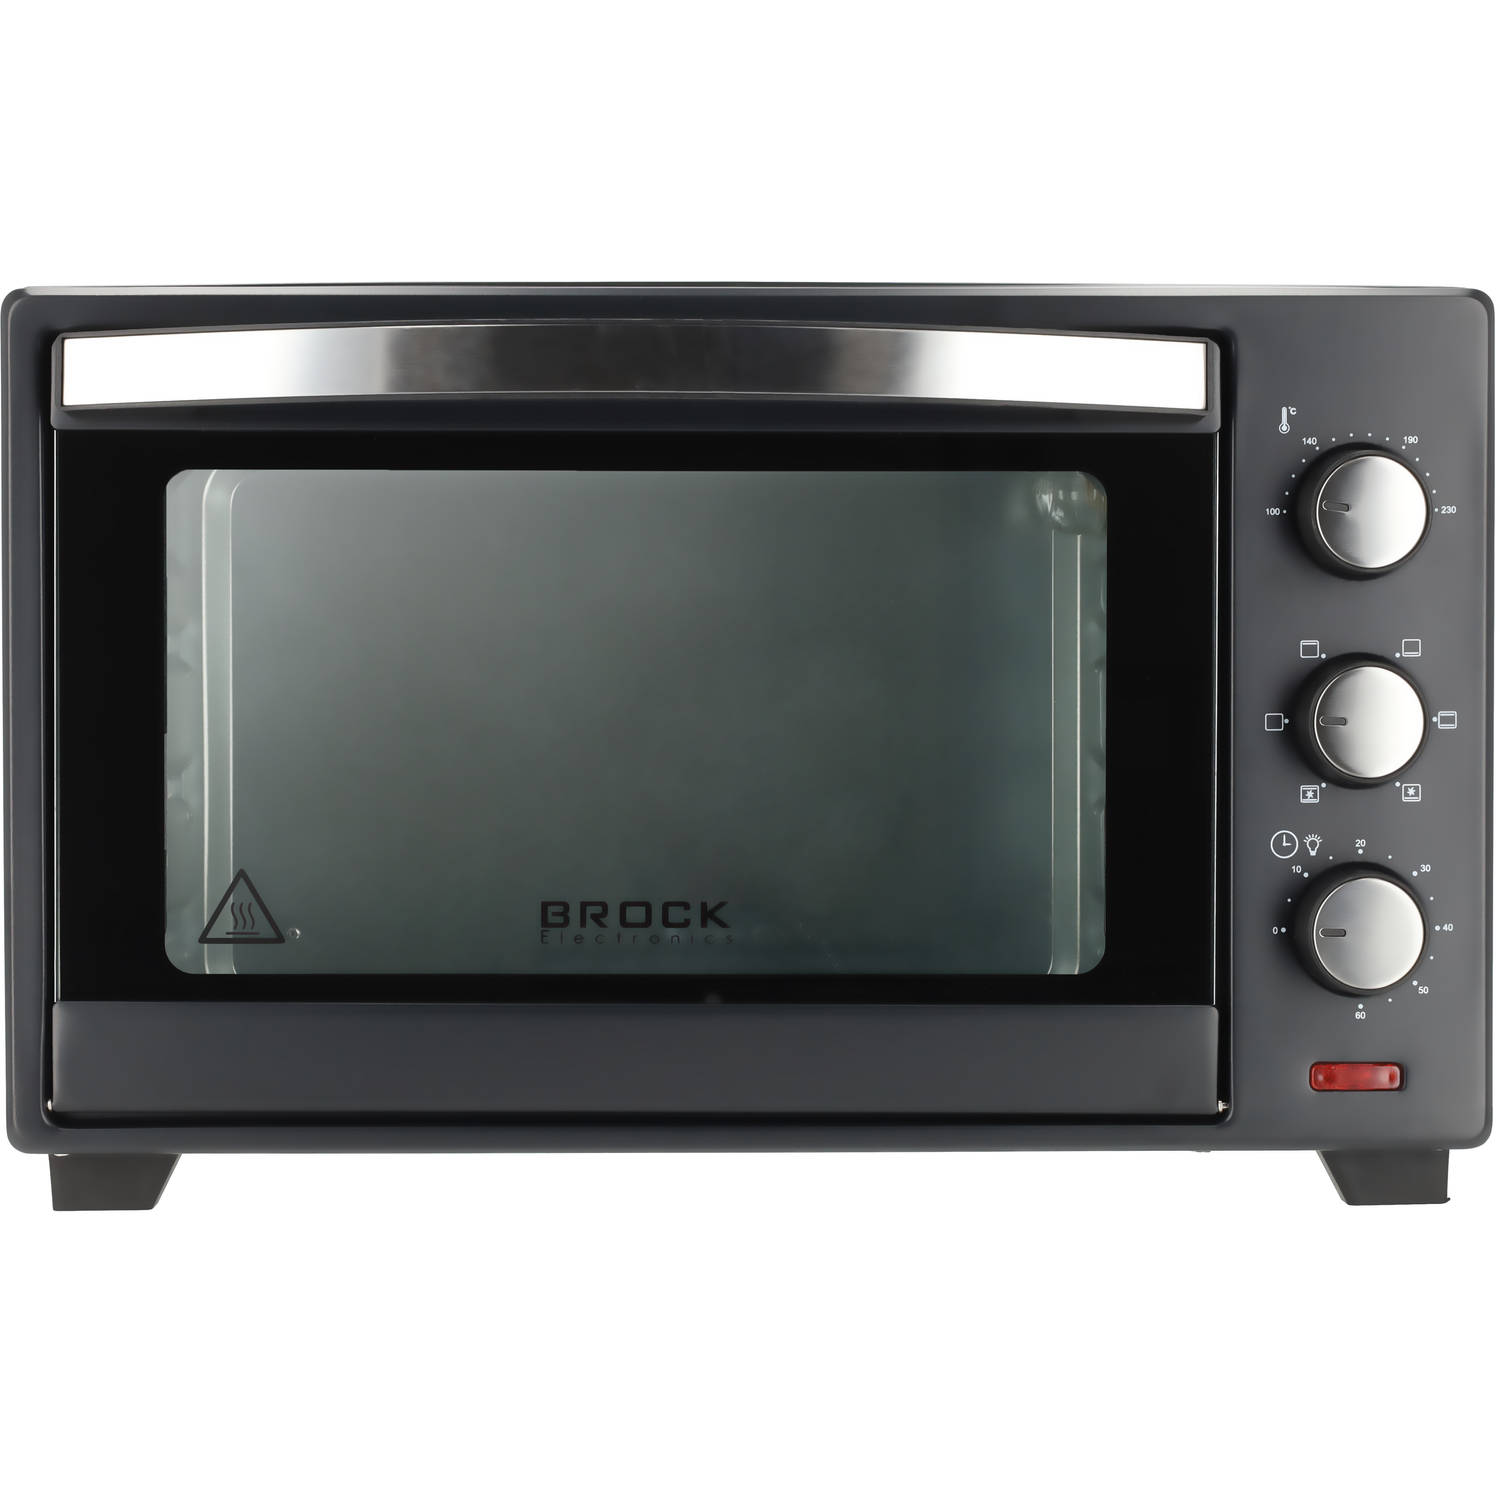 Brock TO 3001 BK Elektrische Oven Vrijstaande Oven met Grill Zwart